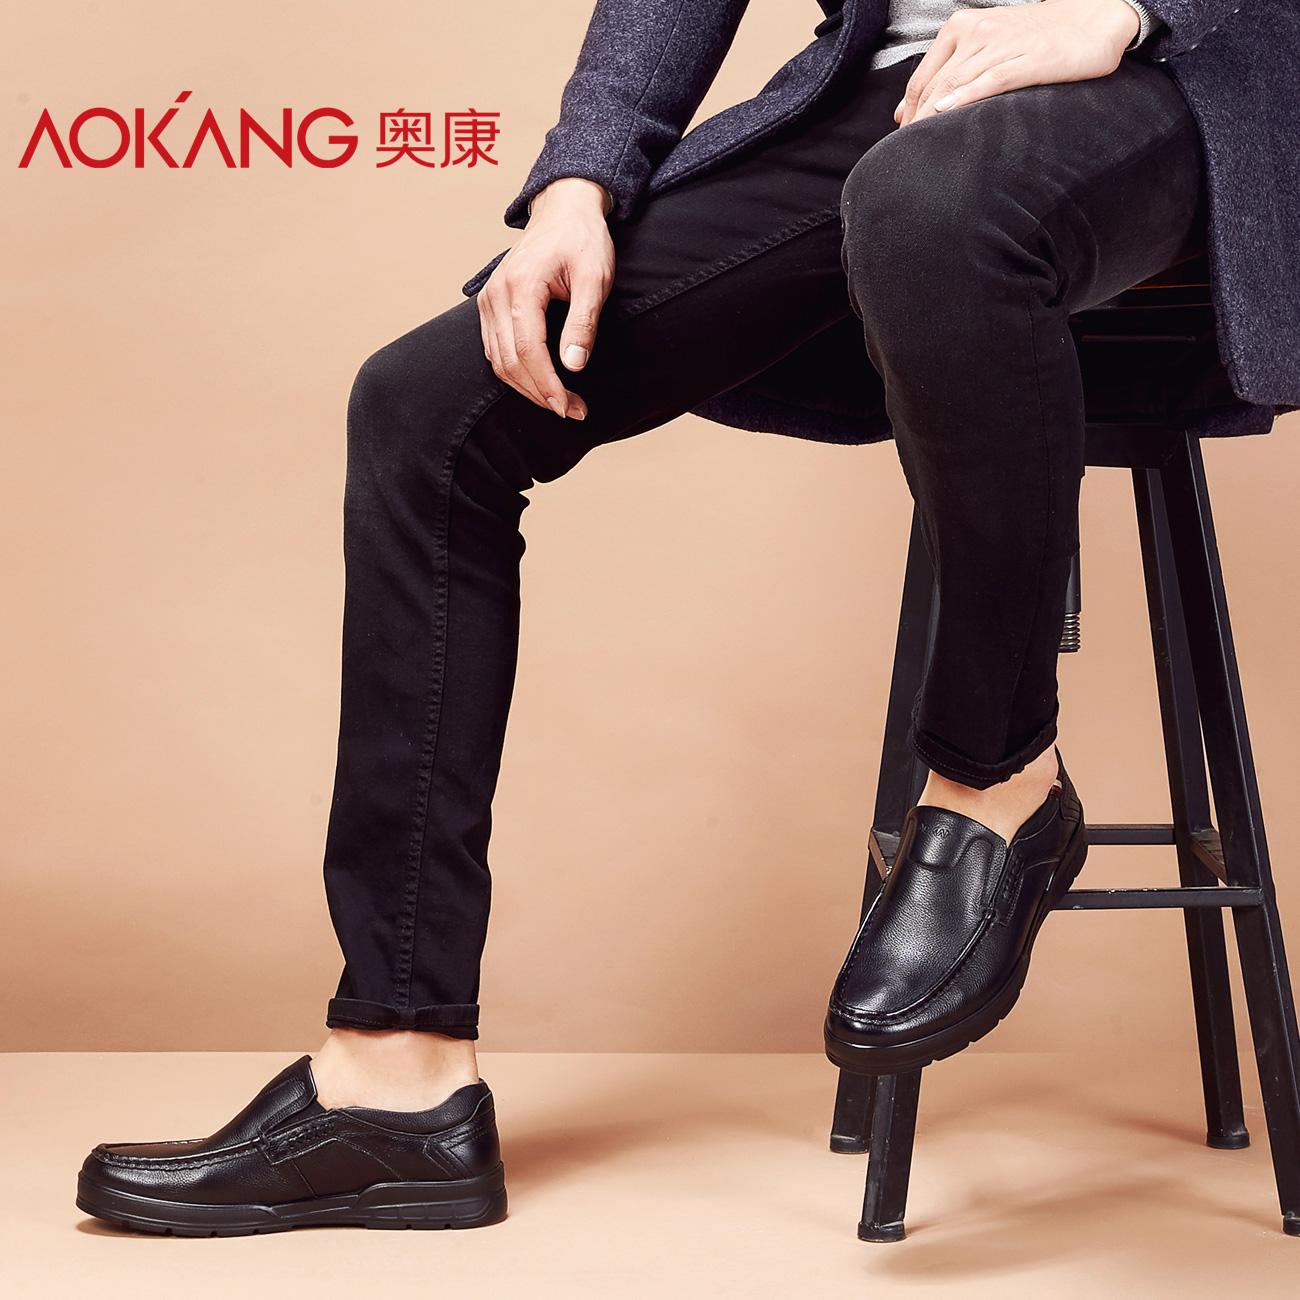 Top 20 giày da nam Aokang cao cấp cho chàng trai thời thượng, ưu đãi tới 30% - 28